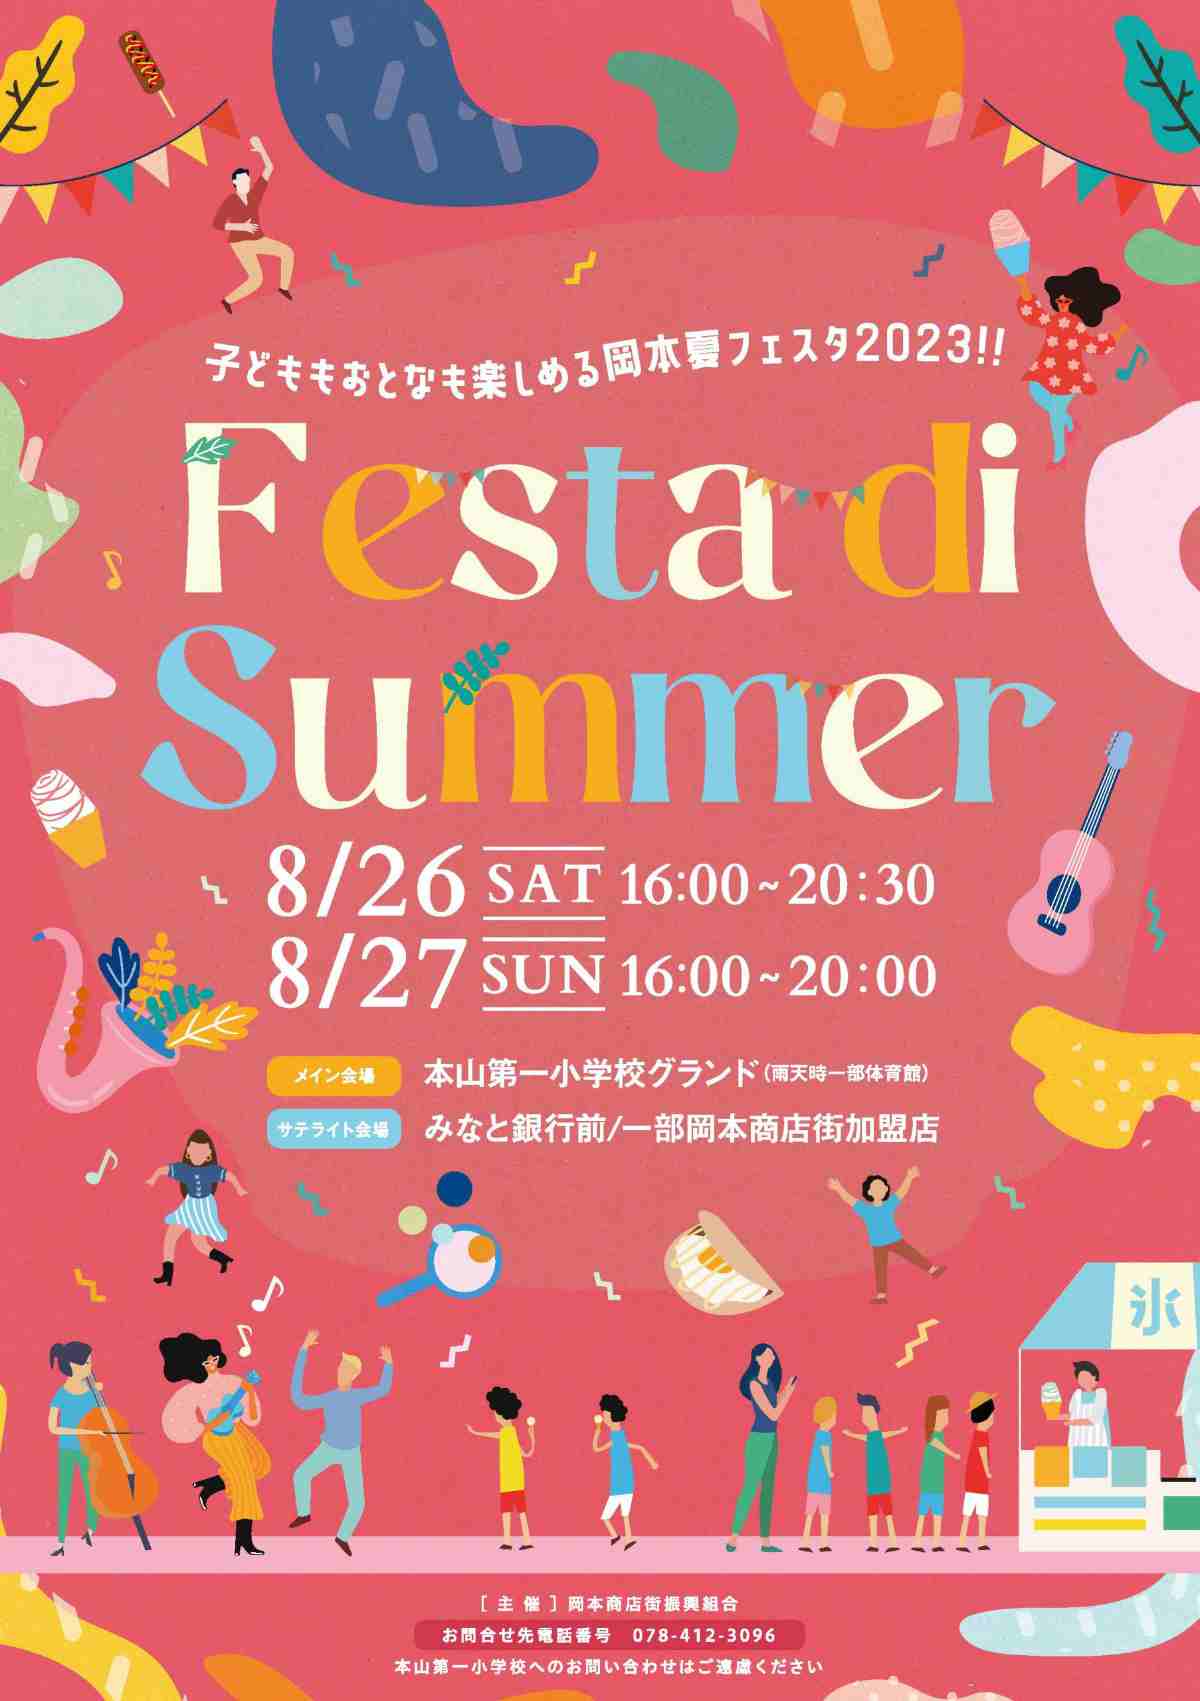 岡本商店街で夏祭り「Festa di Summer」開催　神戸市 [画像]